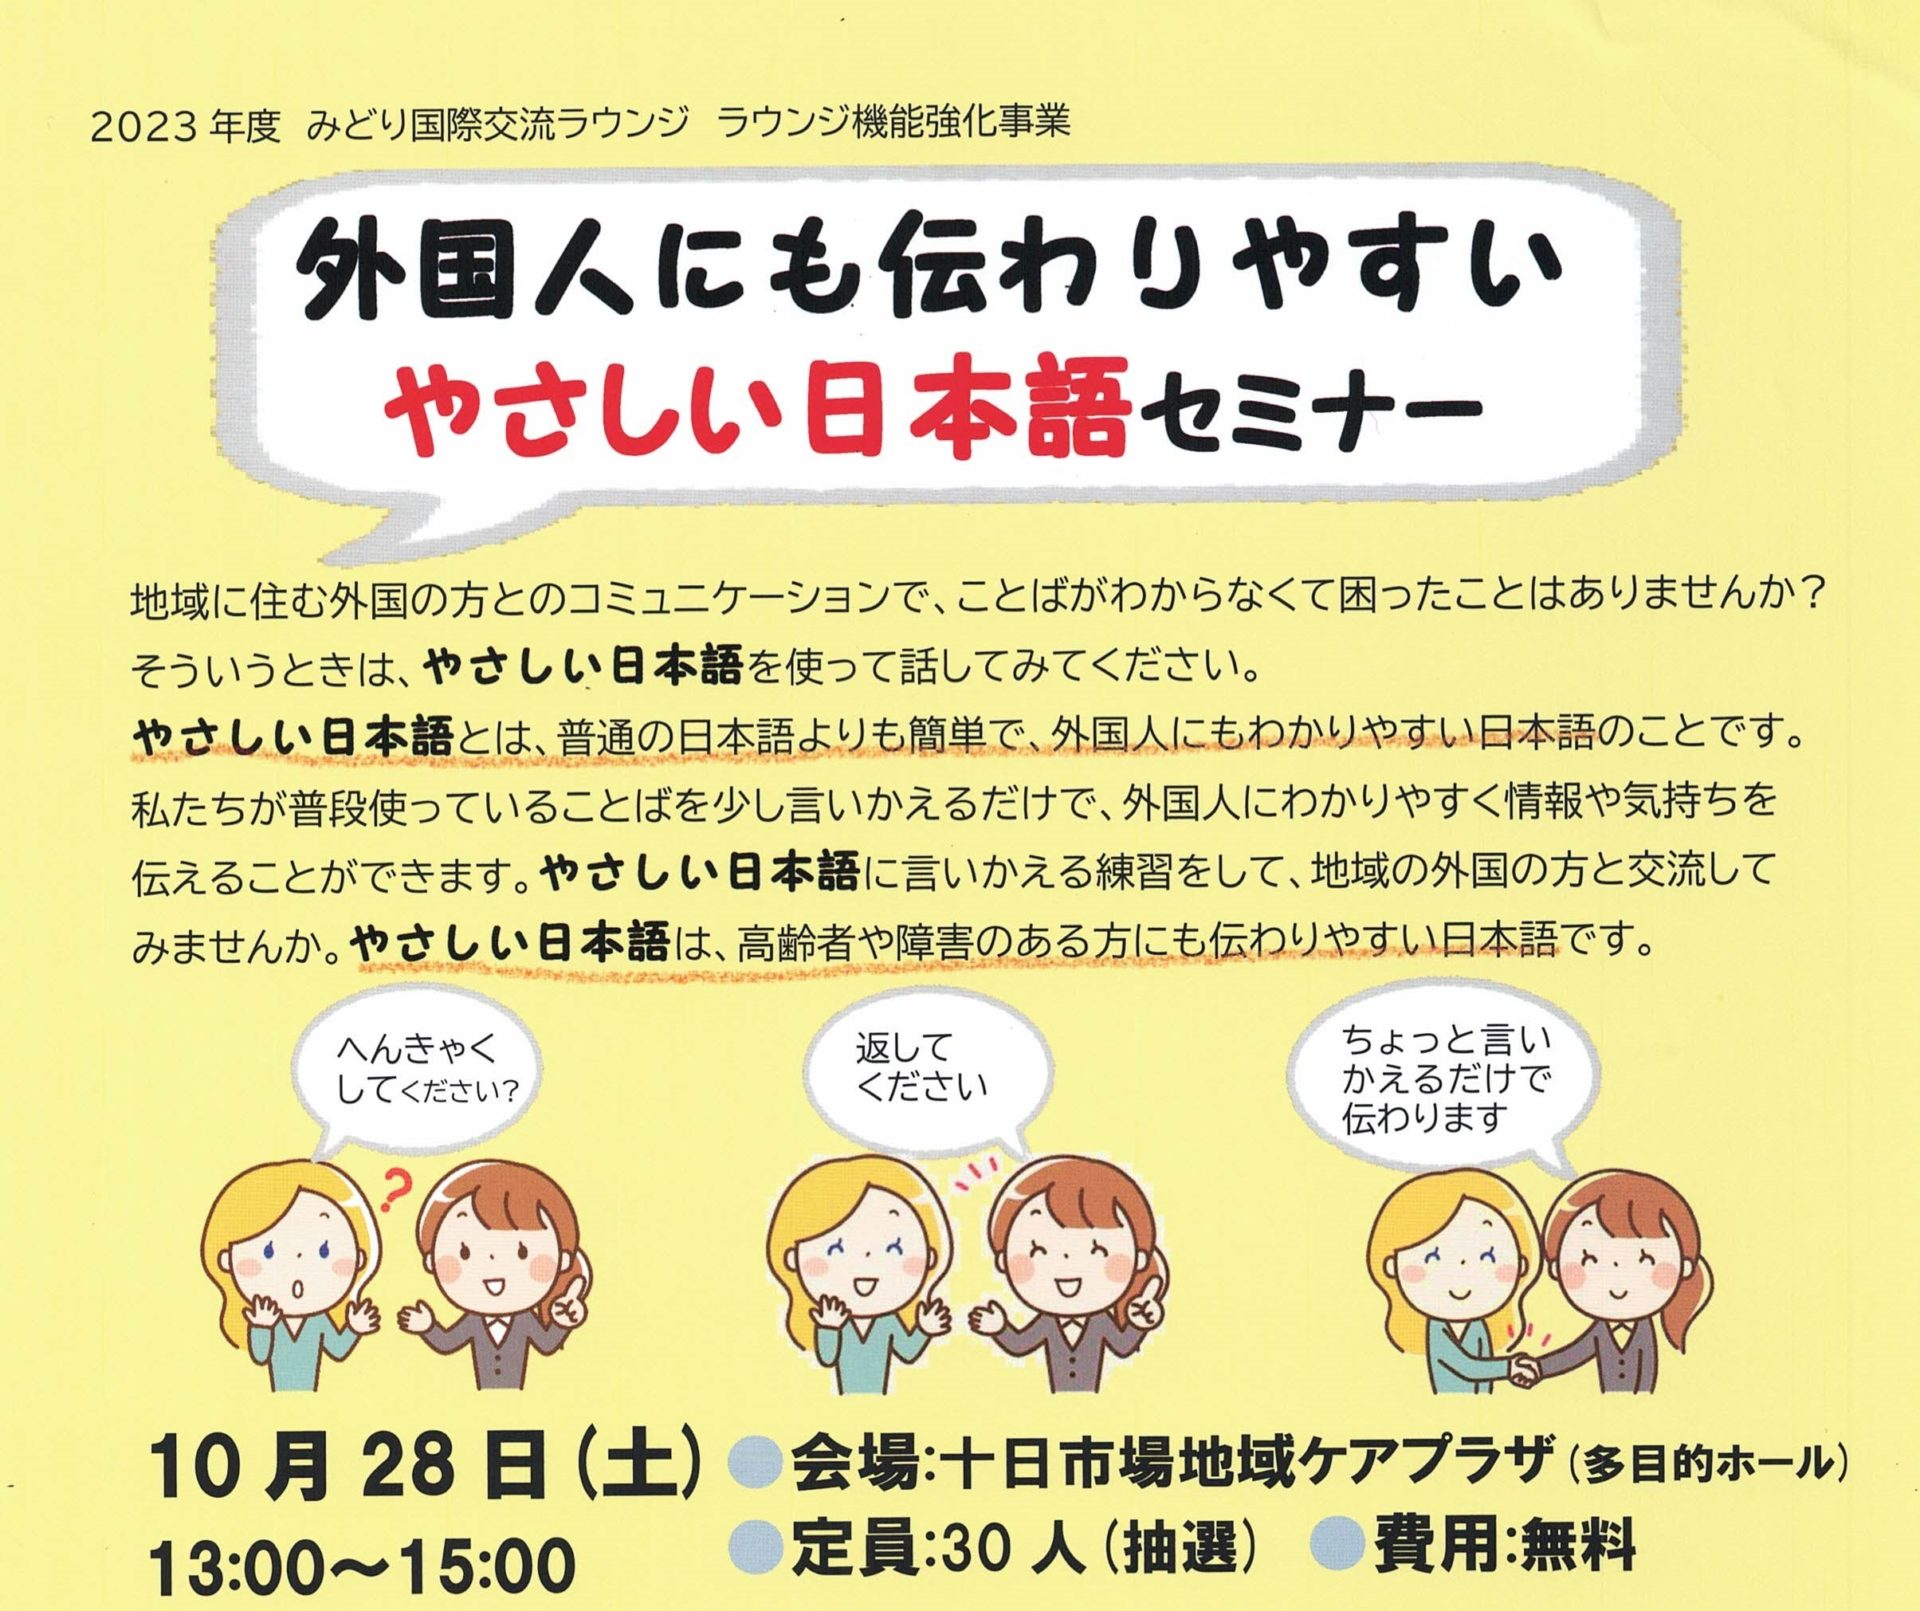 【募集】外国人にも伝わりやすいやさしい日本語セミナー